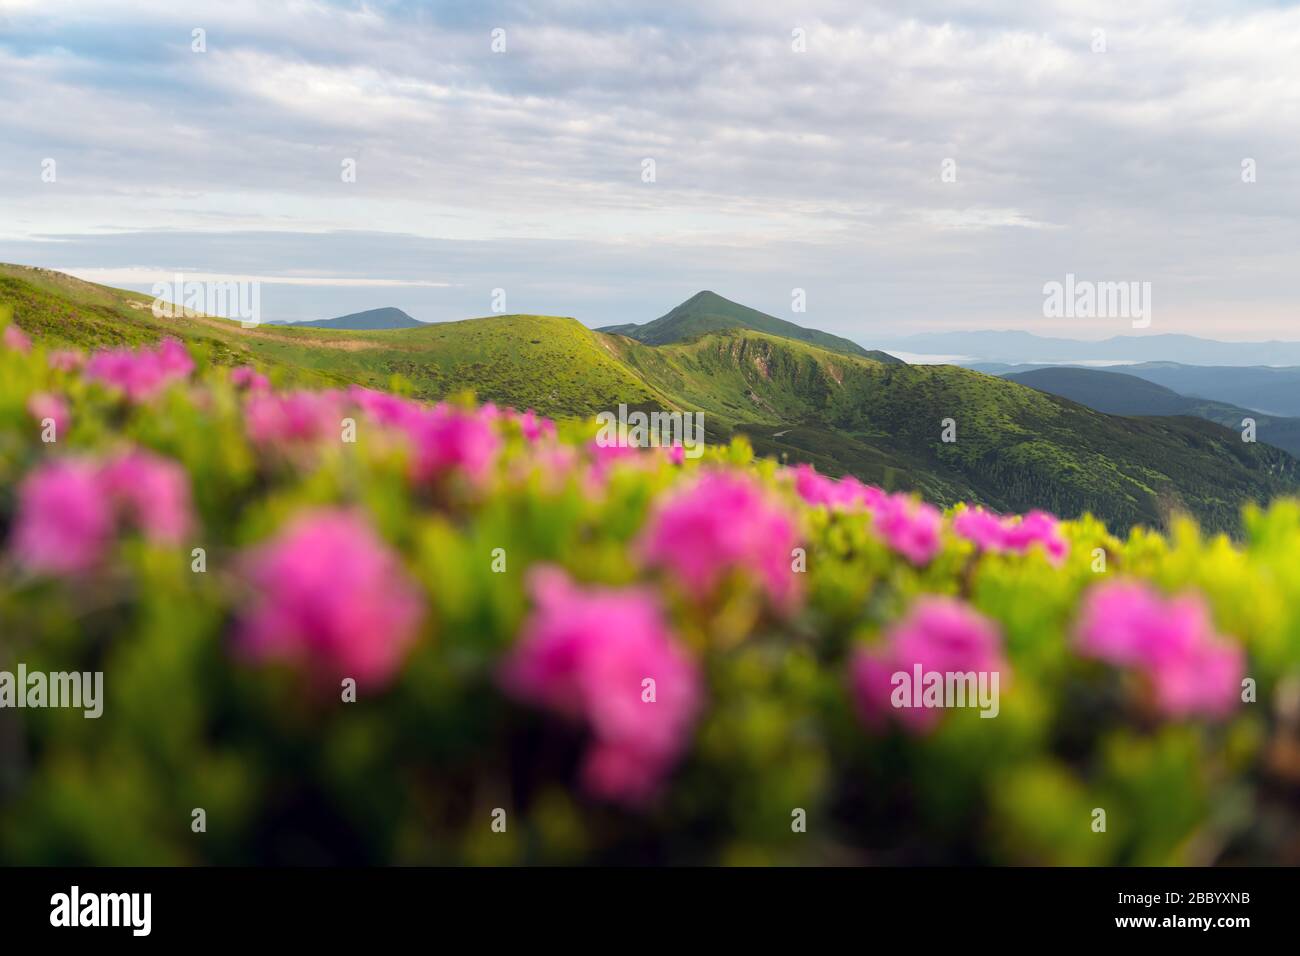 Les fleurs de Rhododendron couvraient la prairie des montagnes en été. Photographie de paysage. Contexte de la nature Banque D'Images